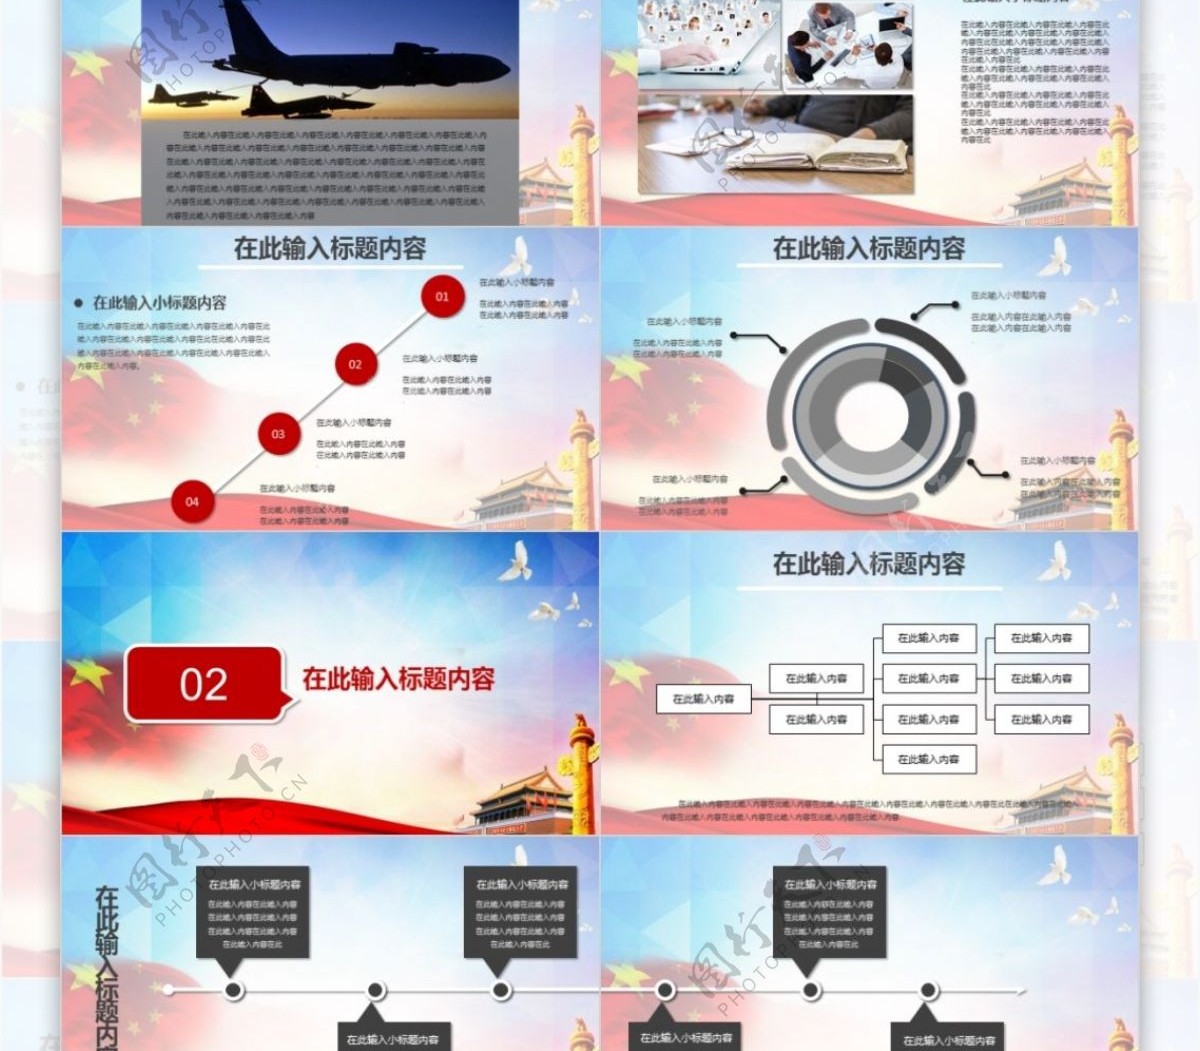 2017中国国防教育八一部队国防军事演习通用PPT模板